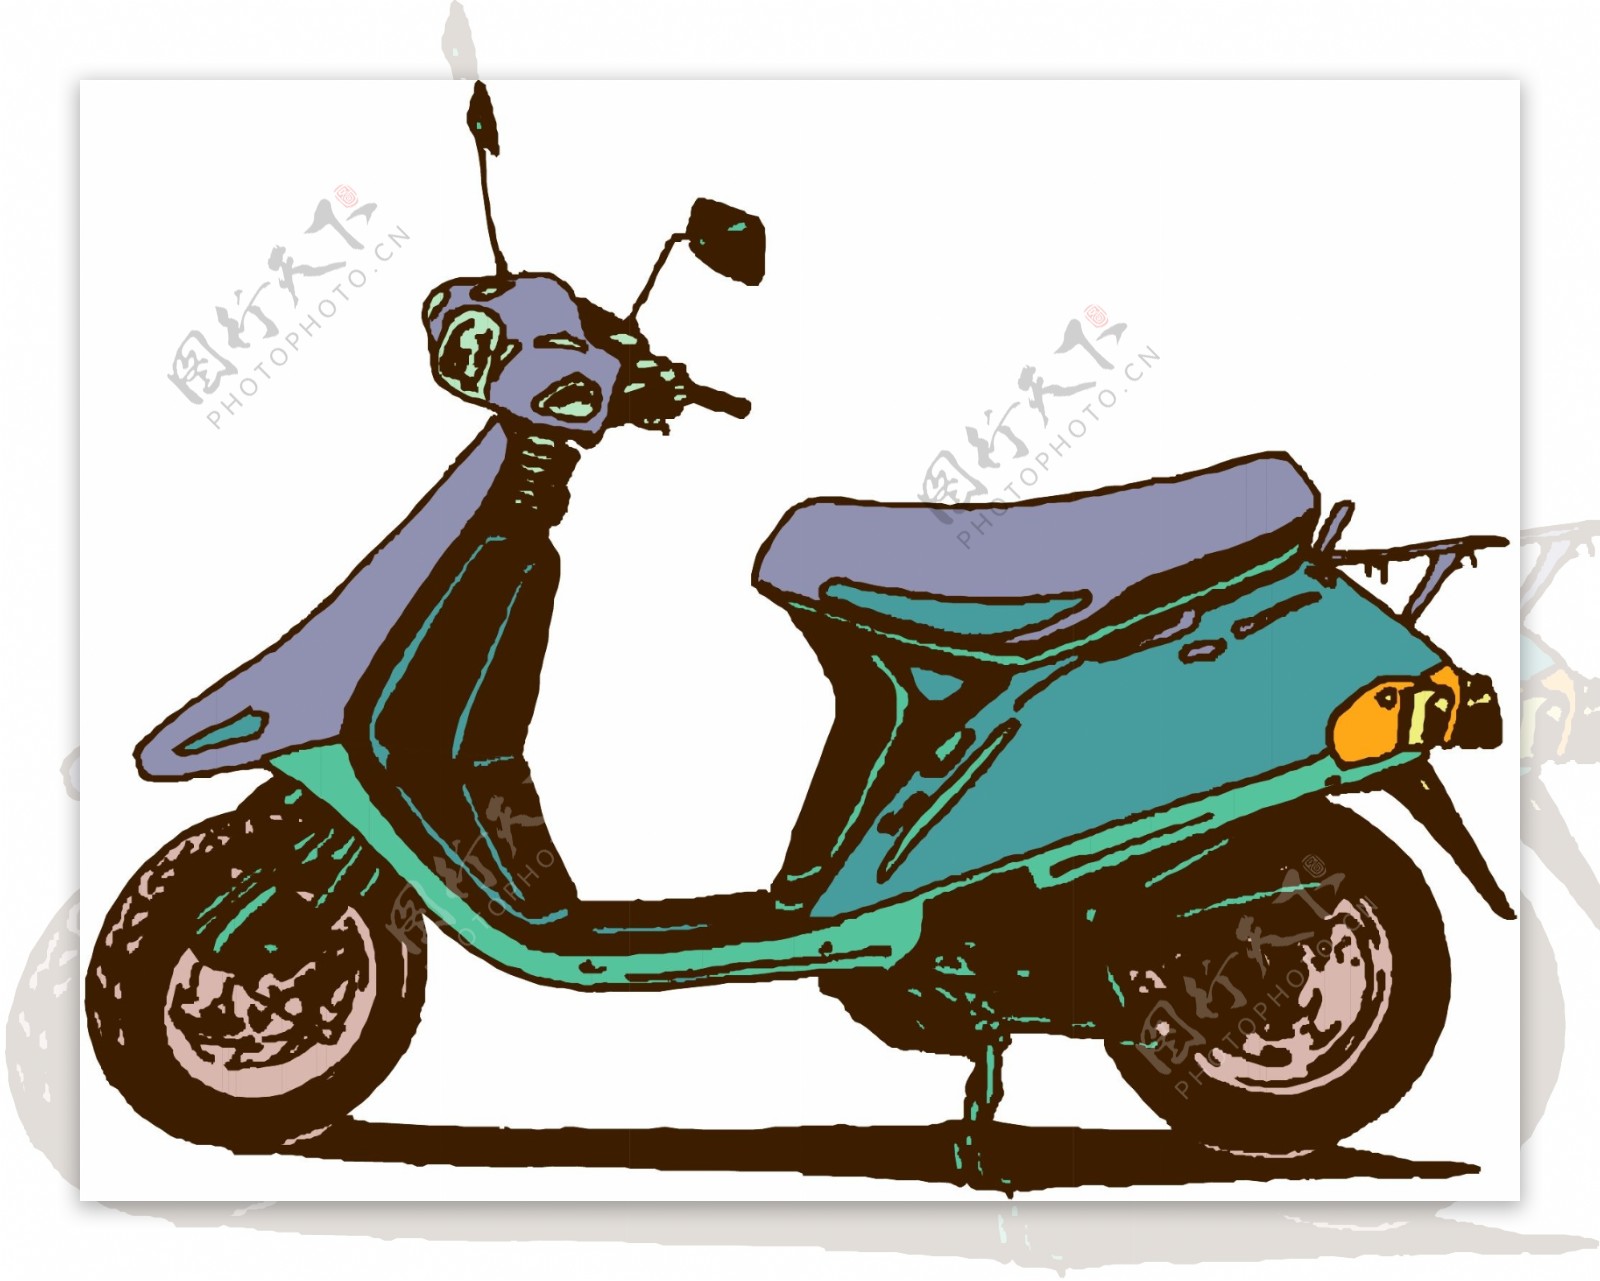 摩托车矢量素材EPS格式0070